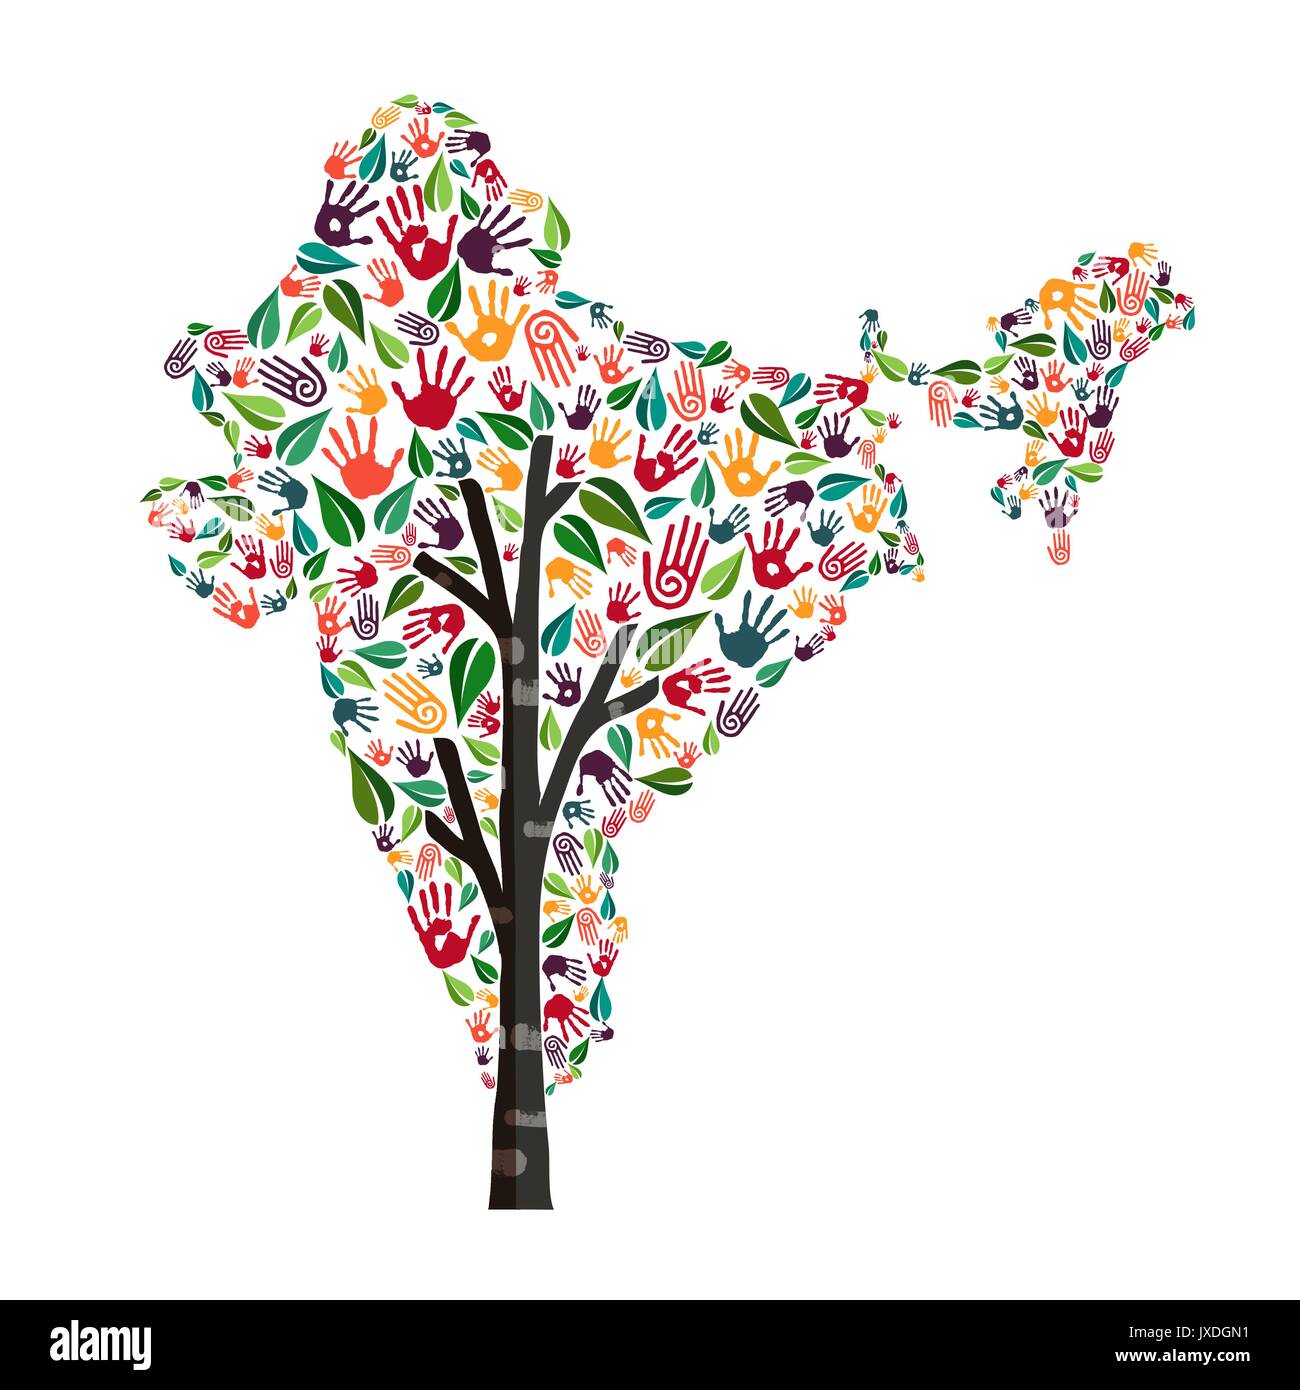 Baum mit indischen Land Form und die menschliche Hand gedruckt. Indien Welt Hilfe Konzept Abbildung für wohltätige Arbeit, Umwelt oder soziales Projekt. EPS 1. Stock Vektor